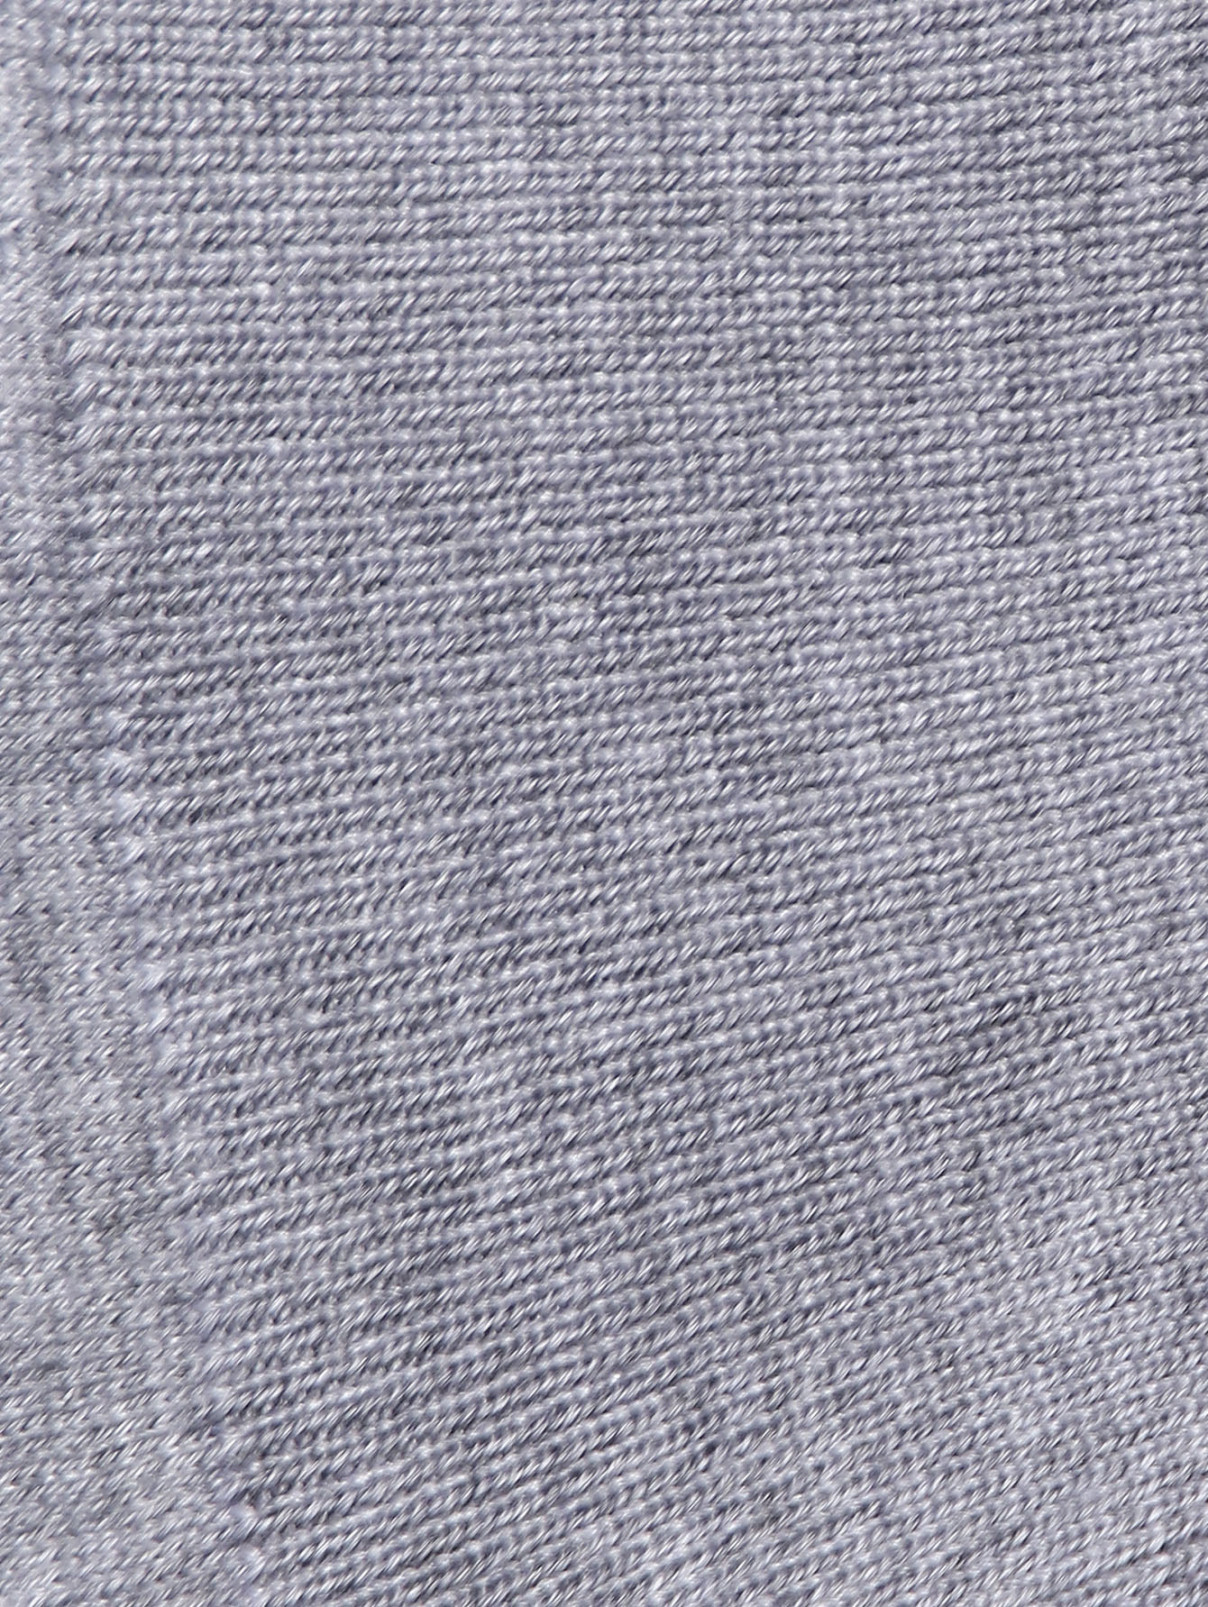 Джемпер из шерсти и шелка с воротом Piacenza Cashmere  –  Деталь  – Цвет:  Серый